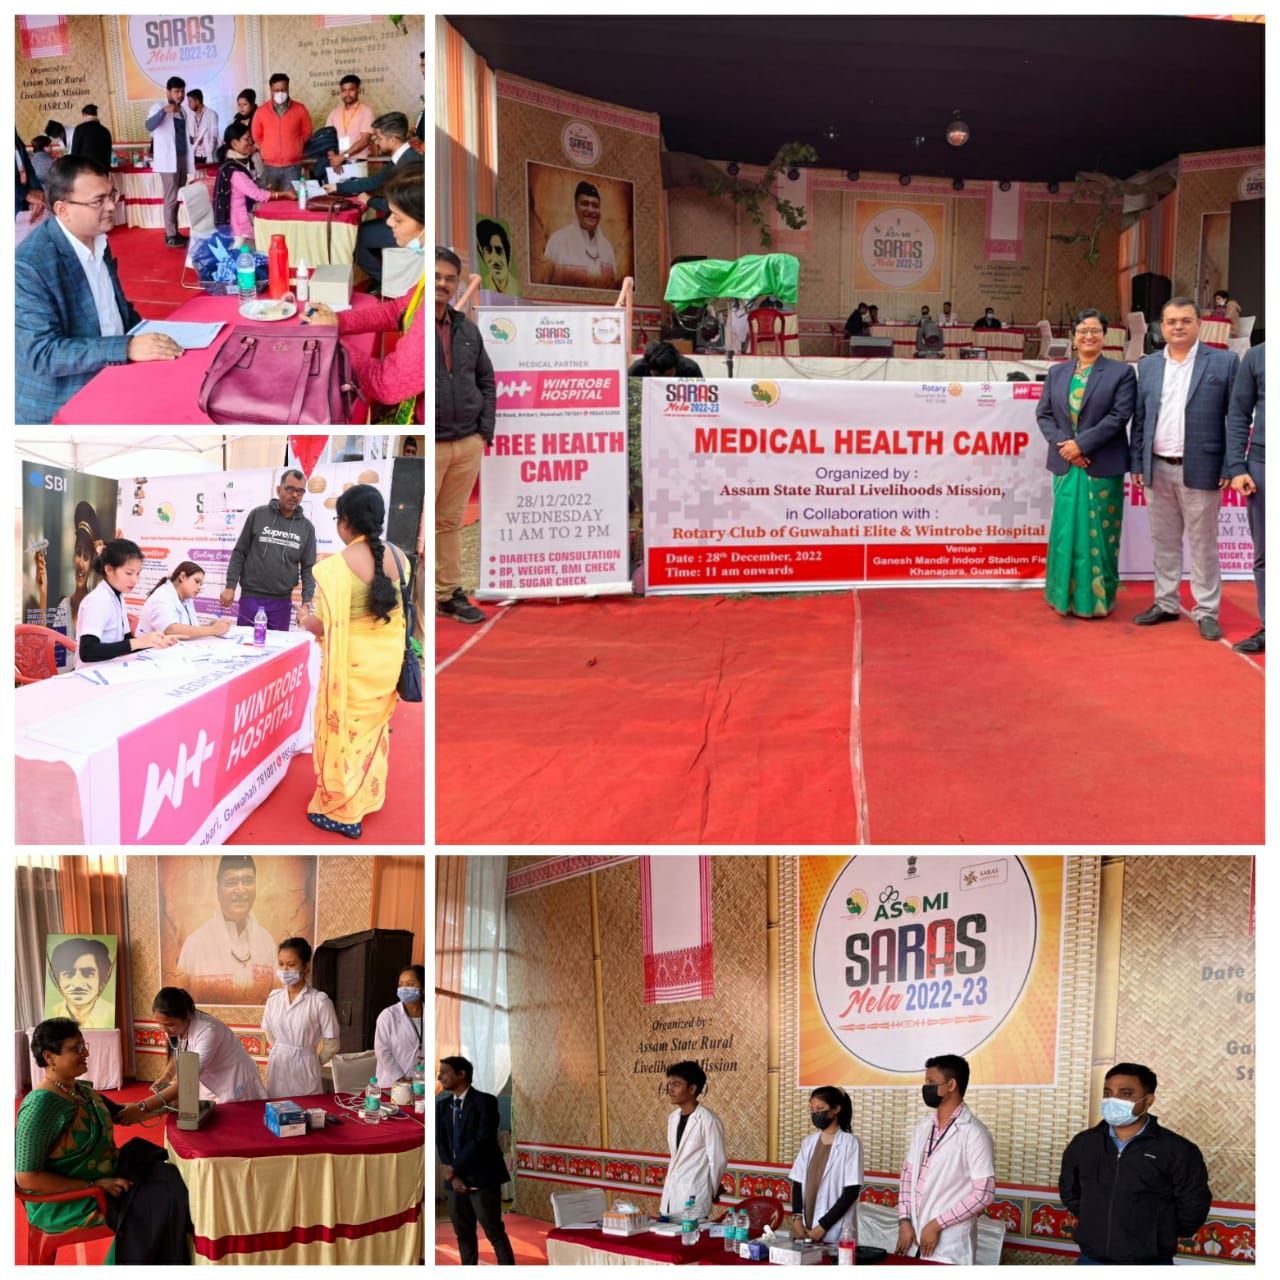 Medical Health Camp and Master Health Check up in Asomi Saras Mela 2022-23, Khanapara, Guwahati